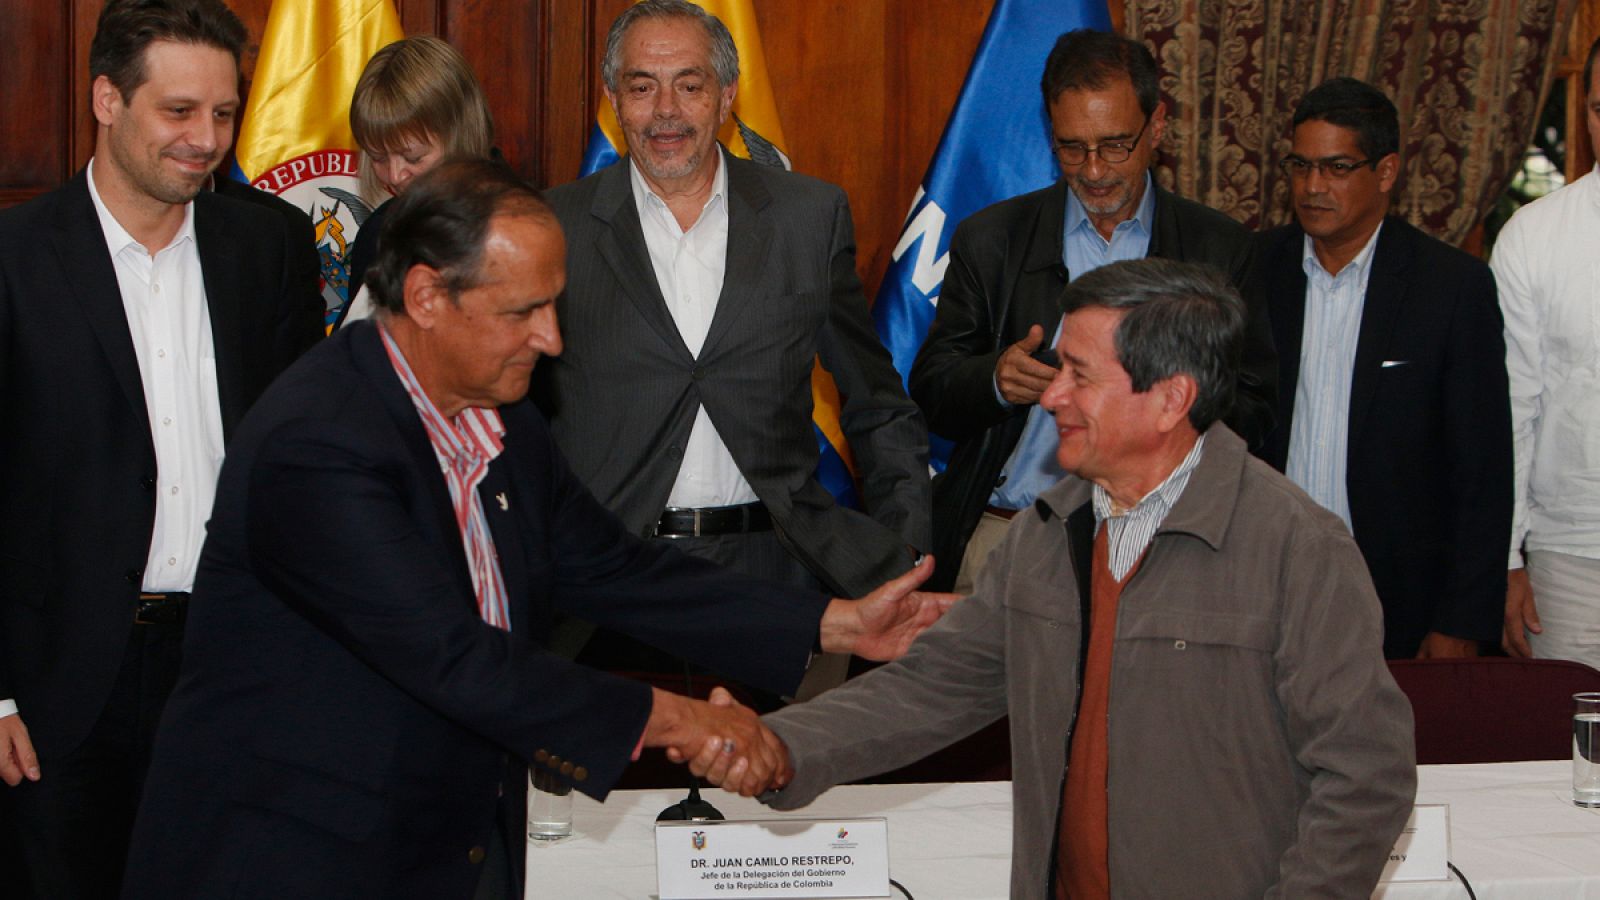 El jefe negociador de Colombia Juan Camilo Restrepo estrecha la mano con el jefe negociador del ELN Pablo Beltrán en Quito.